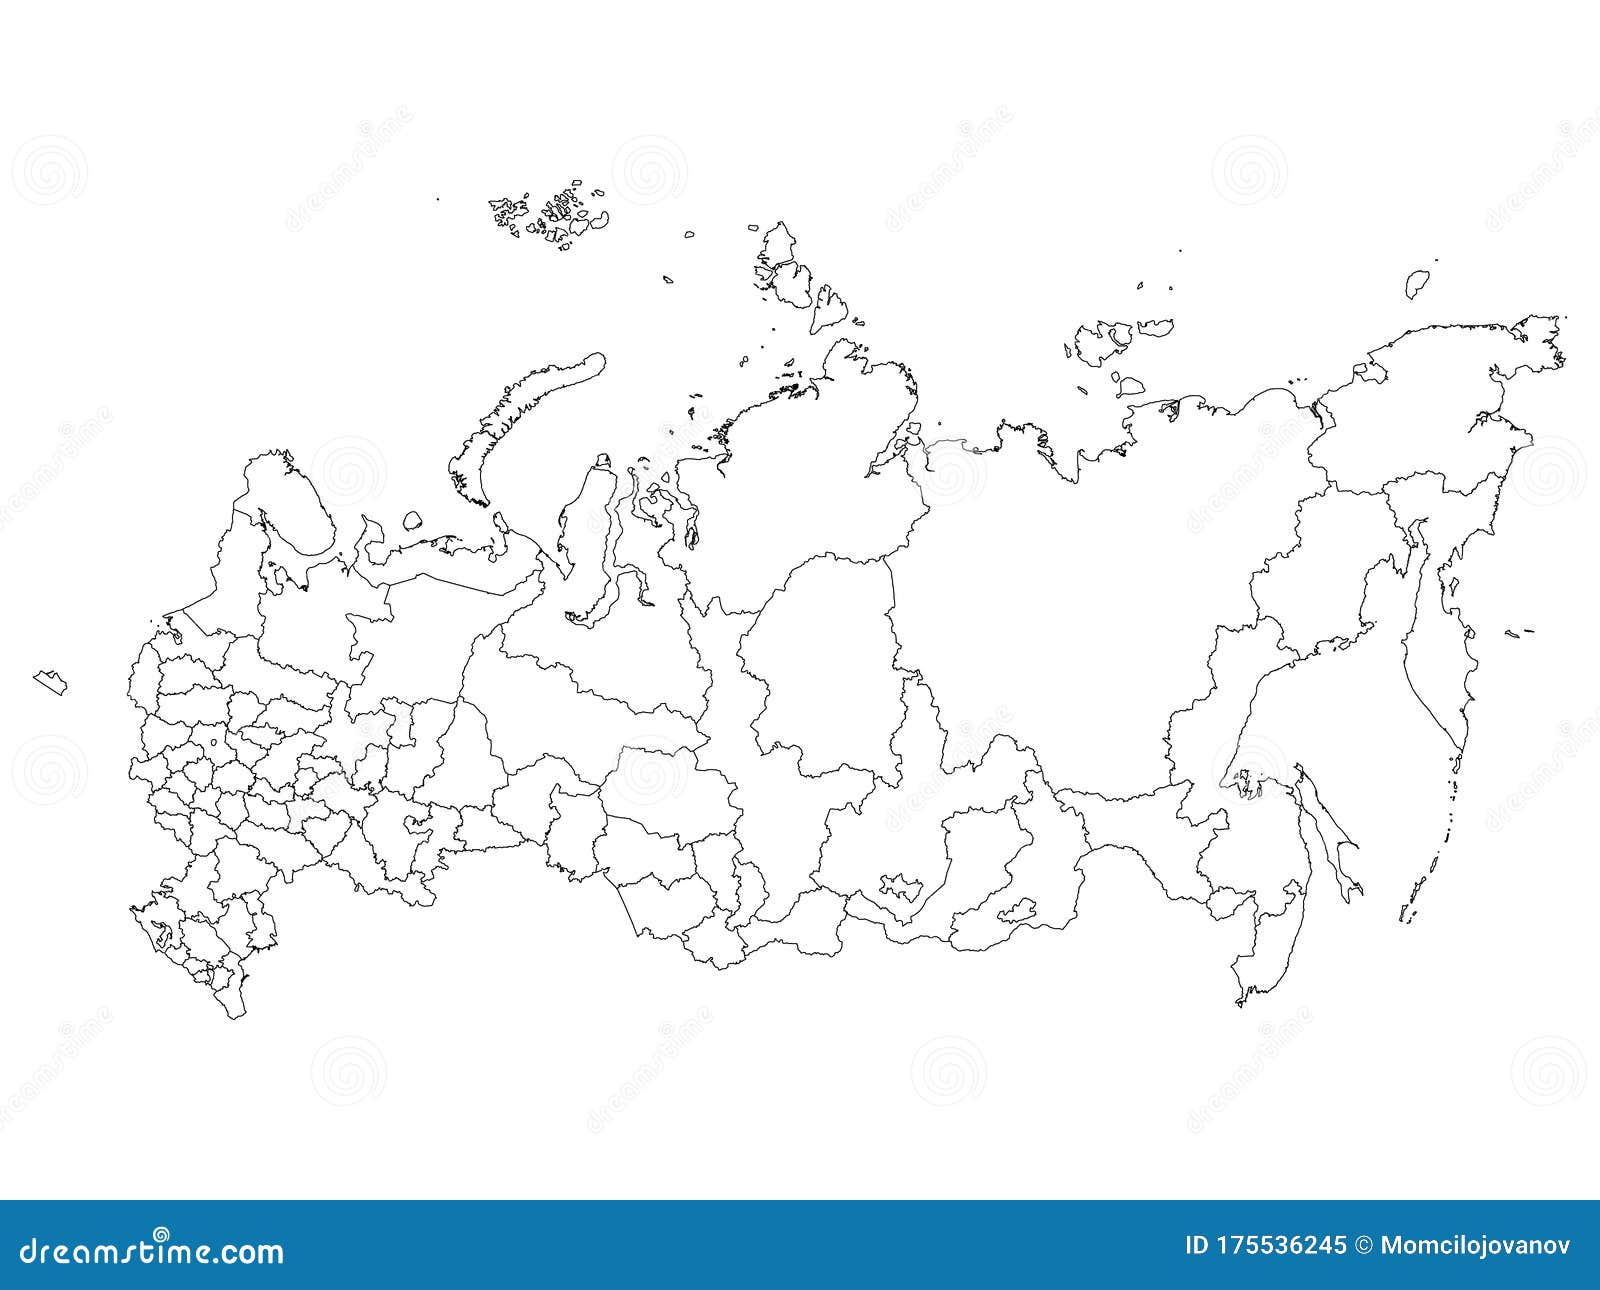 Mapa detalhado da Rússia, Federação Russa e conjunto de navegação de mapas  mundiais. Ilustração vetorial plana . imagem vetorial de sanek13744©  119074740